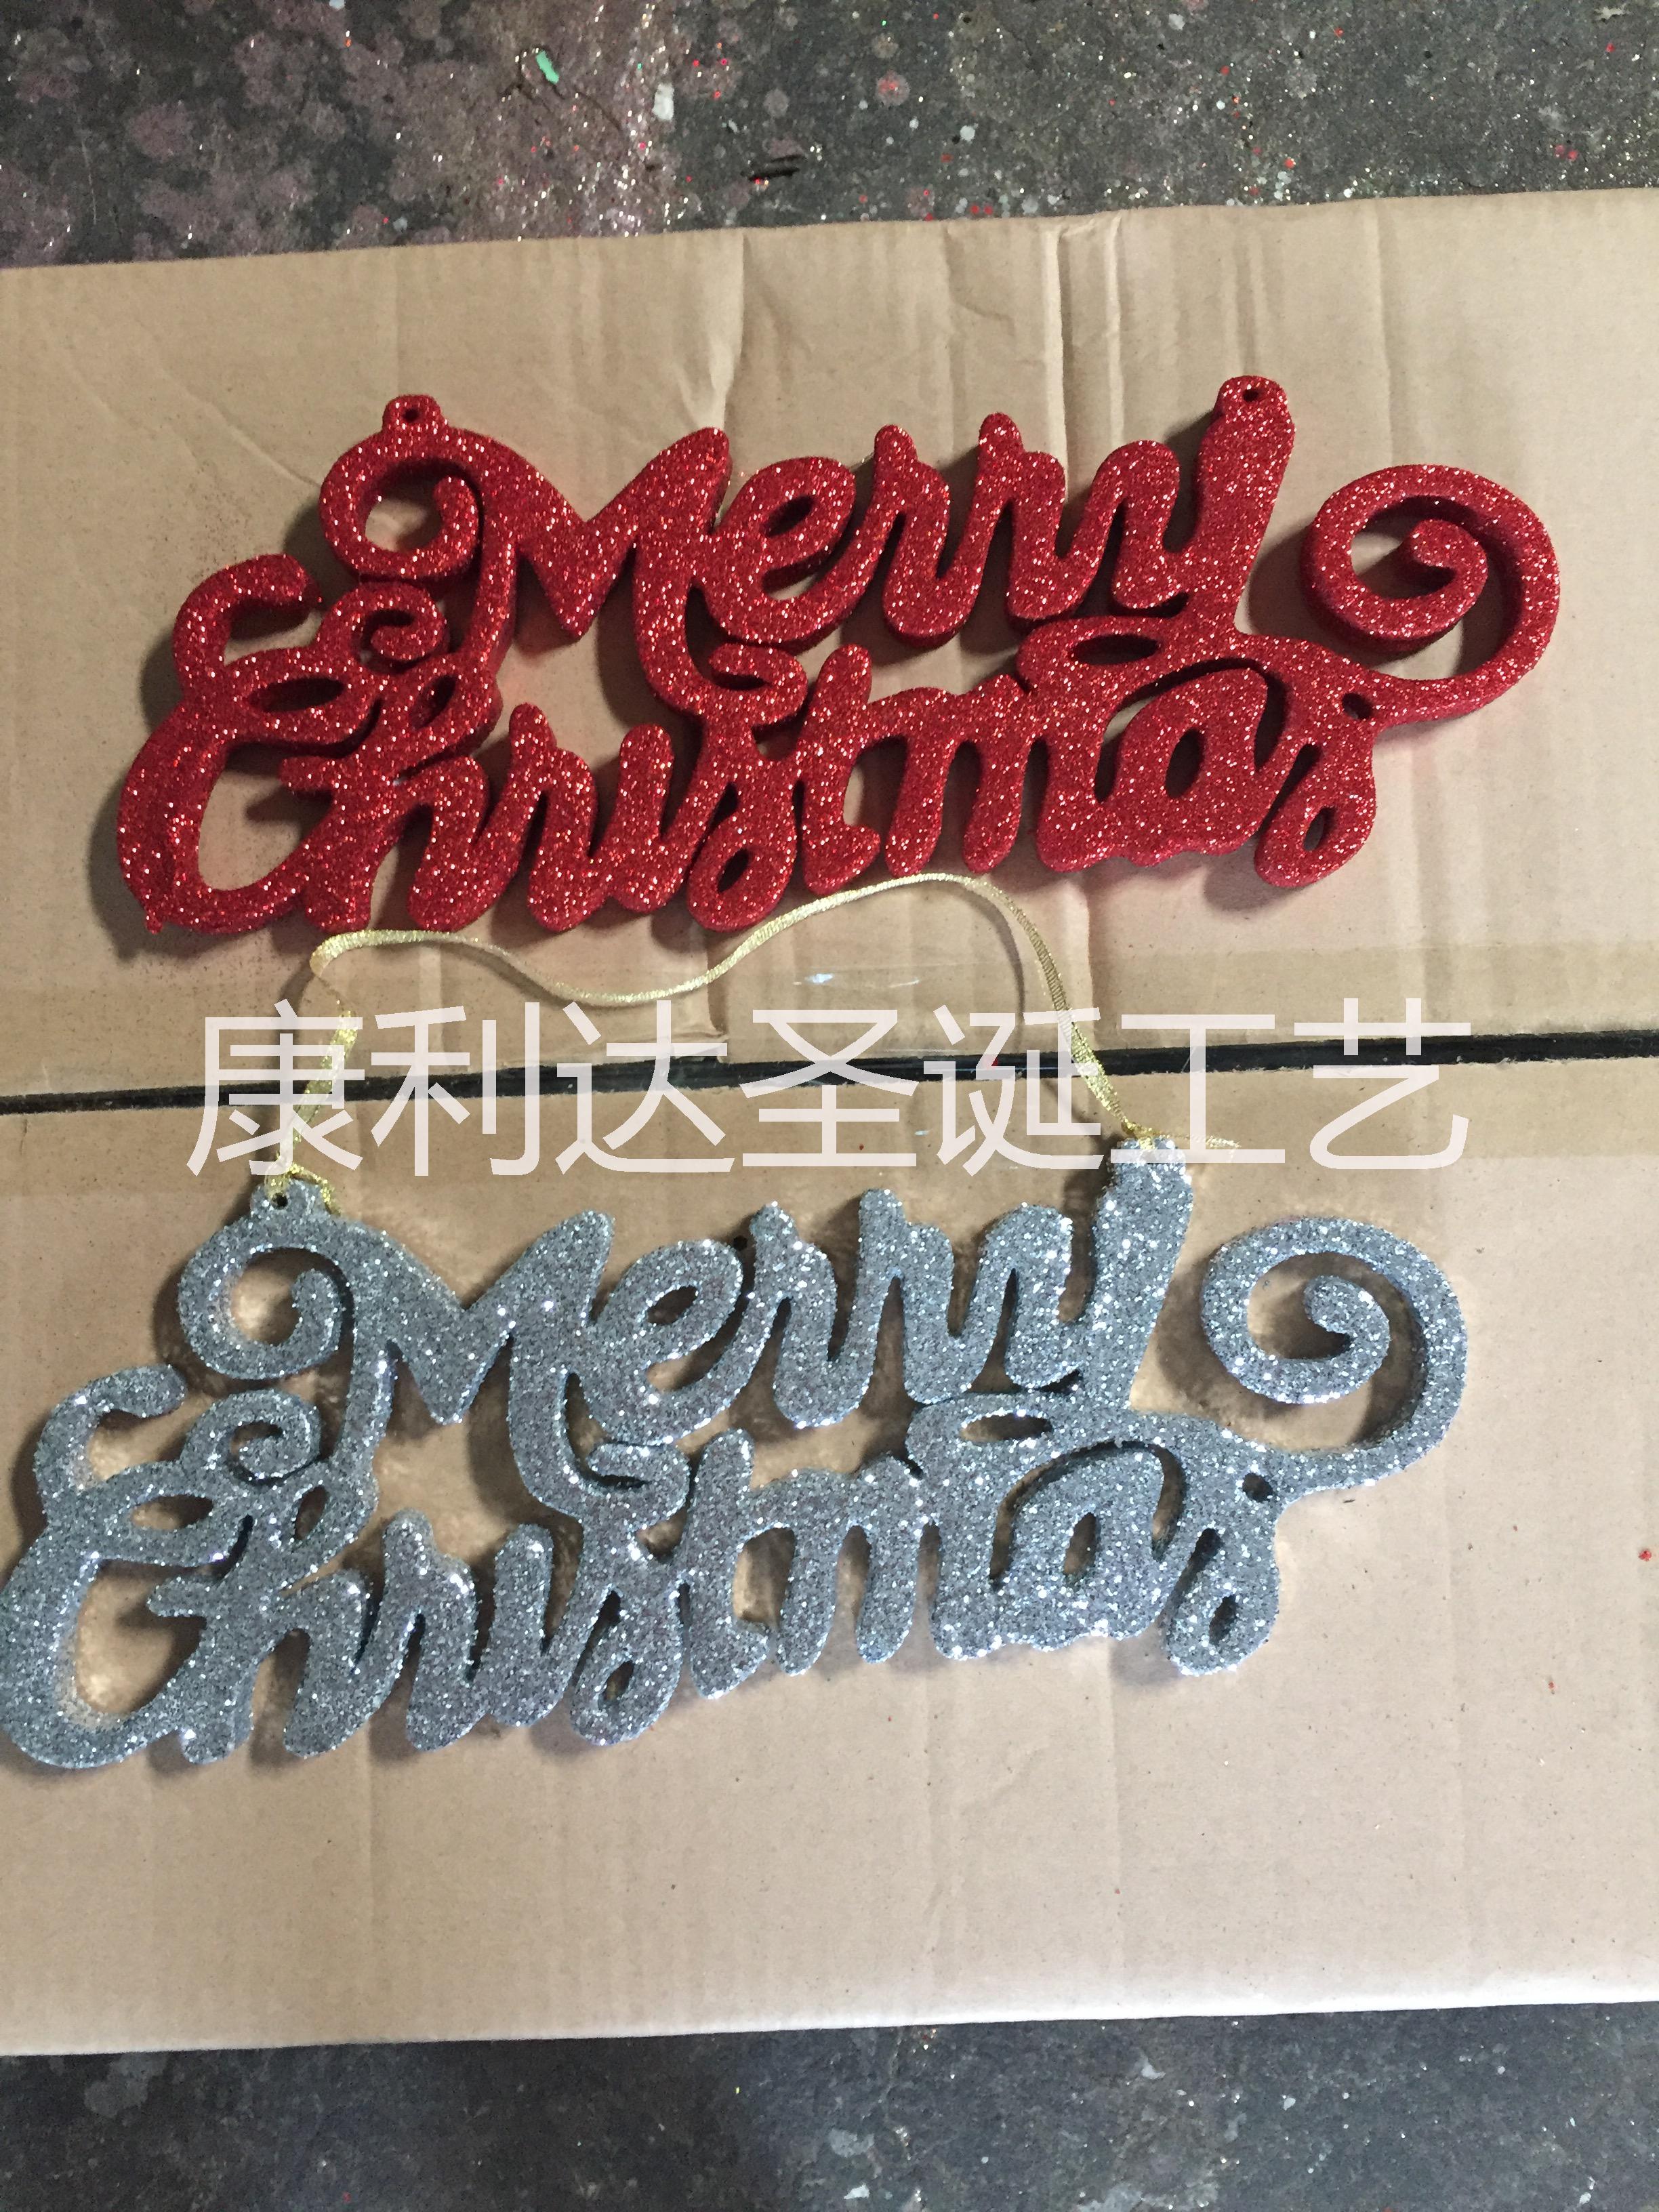 惠州市圣诞字母吊牌、字母牌、圣诞装饰品厂家圣诞字母吊牌、字母牌、圣诞装饰品